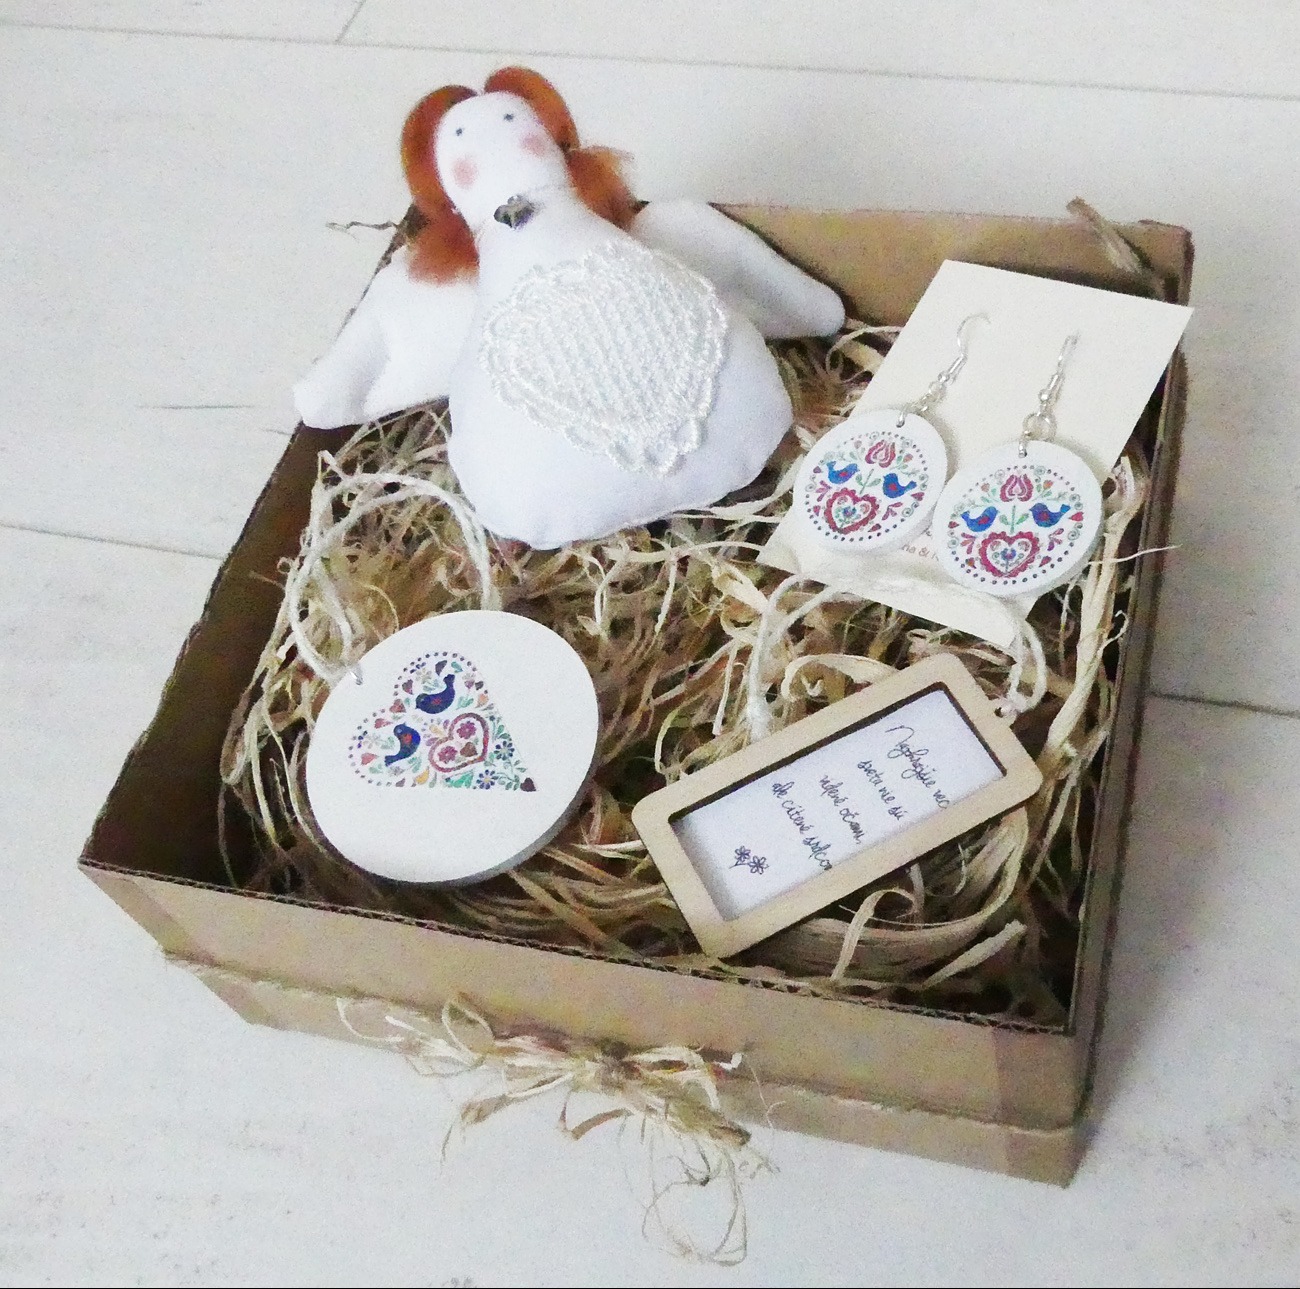 Folklórny darčekový box s anjelikom, folklórnymi náušnicami a dekoráciami